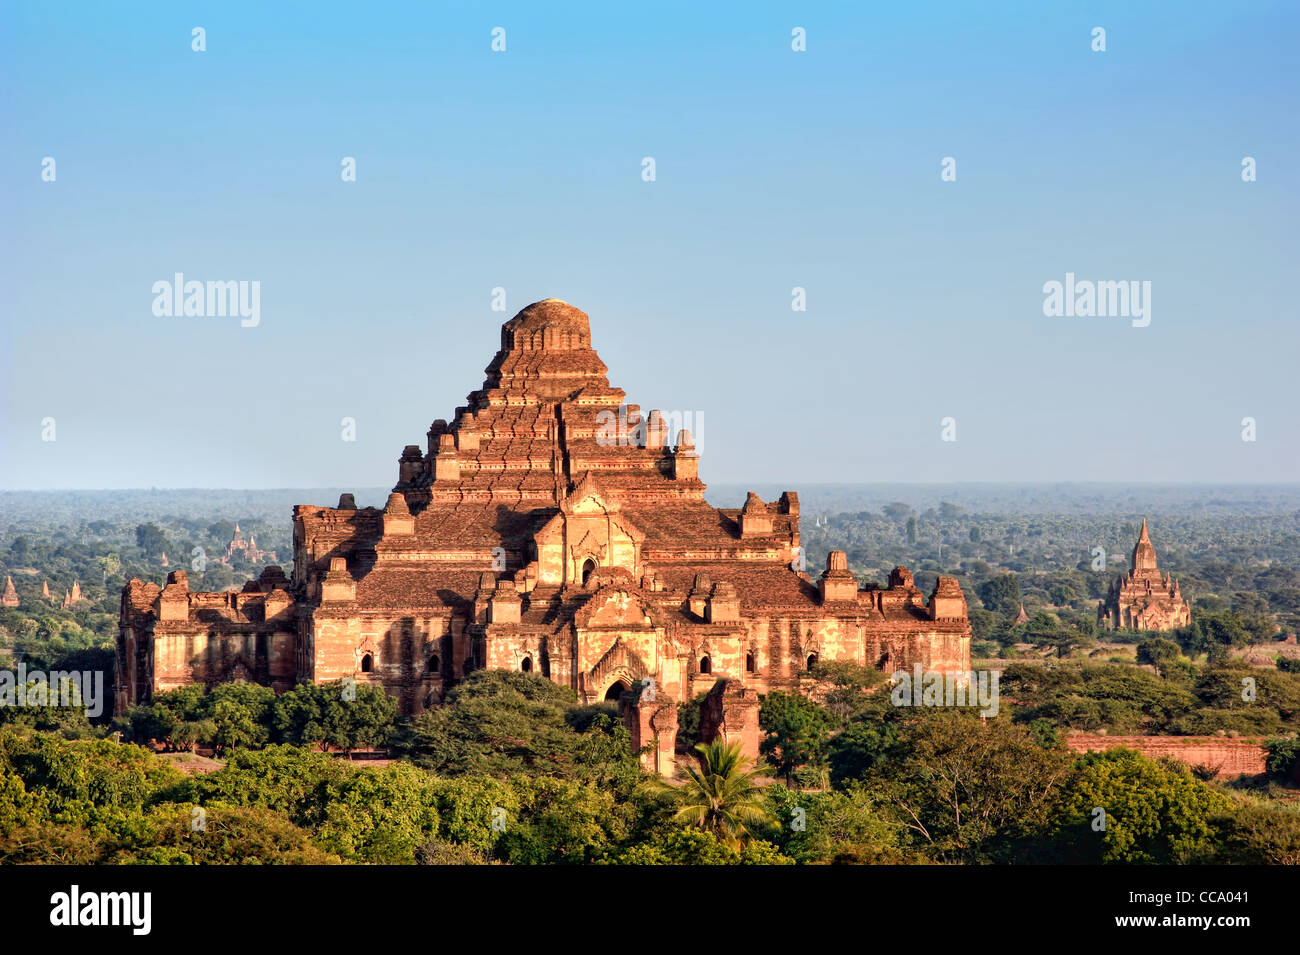 La mauvaise chance, temple Dhammayangyi Pahto, Bagan (Pagan), le Myanmar (Birmanie) Banque D'Images